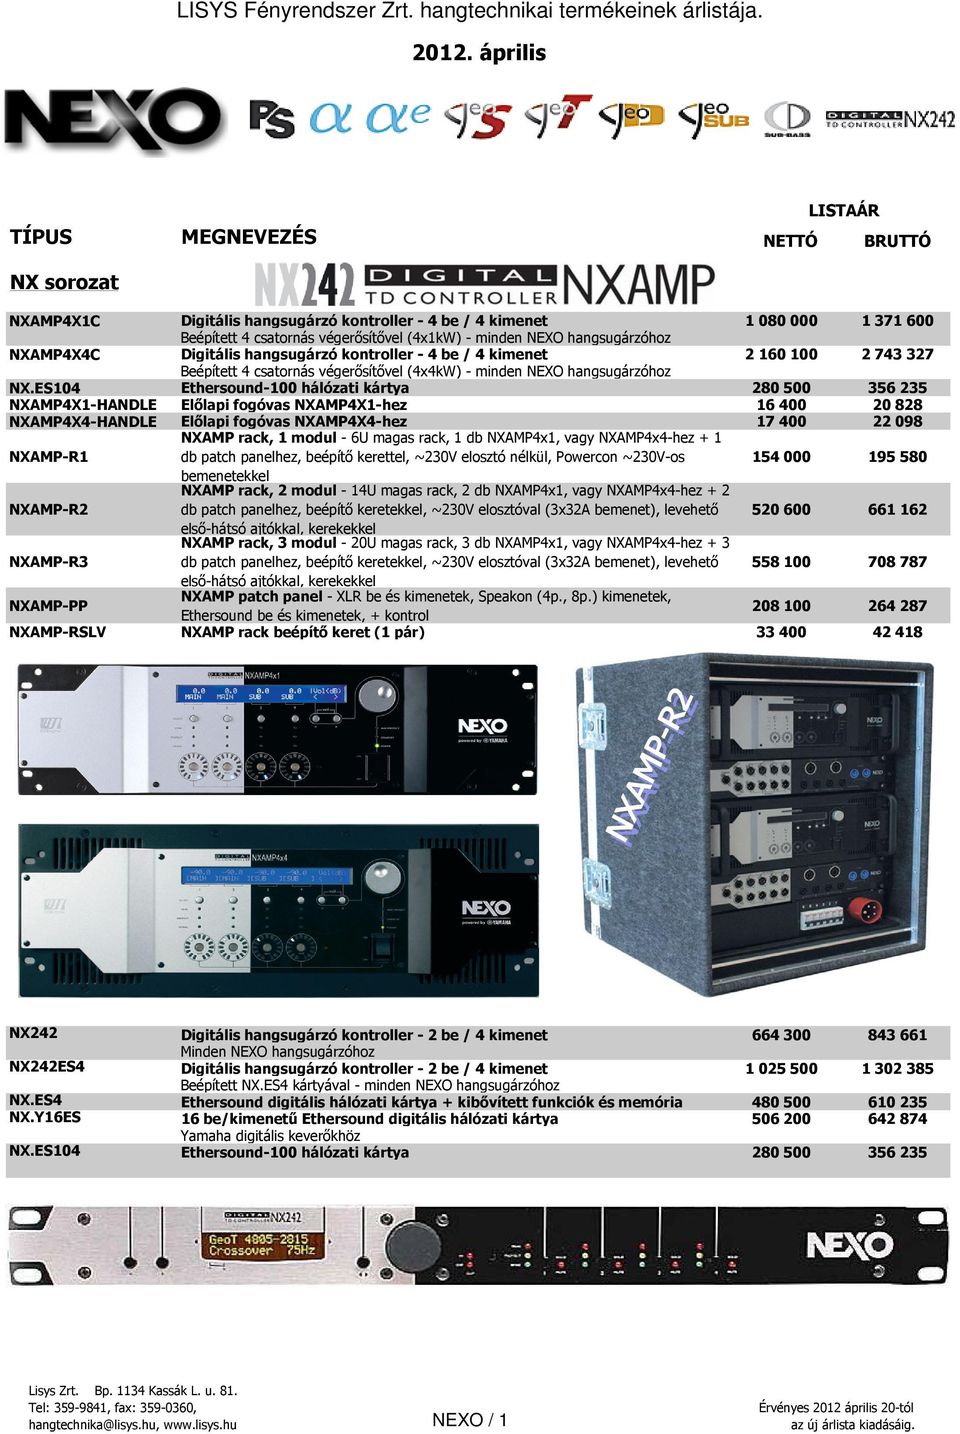 ES104 Ethersound-100 hálózati kártya 280 500 356 235 NXAMP4X1-HANDLE Előlapi fogóvas NXAMP4X1-hez 16 400 20 828 NXAMP4X4-HANDLE Előlapi fogóvas NXAMP4X4-hez 17 400 22 098 NXAMP-R1 NXAMP rack, 1 modul